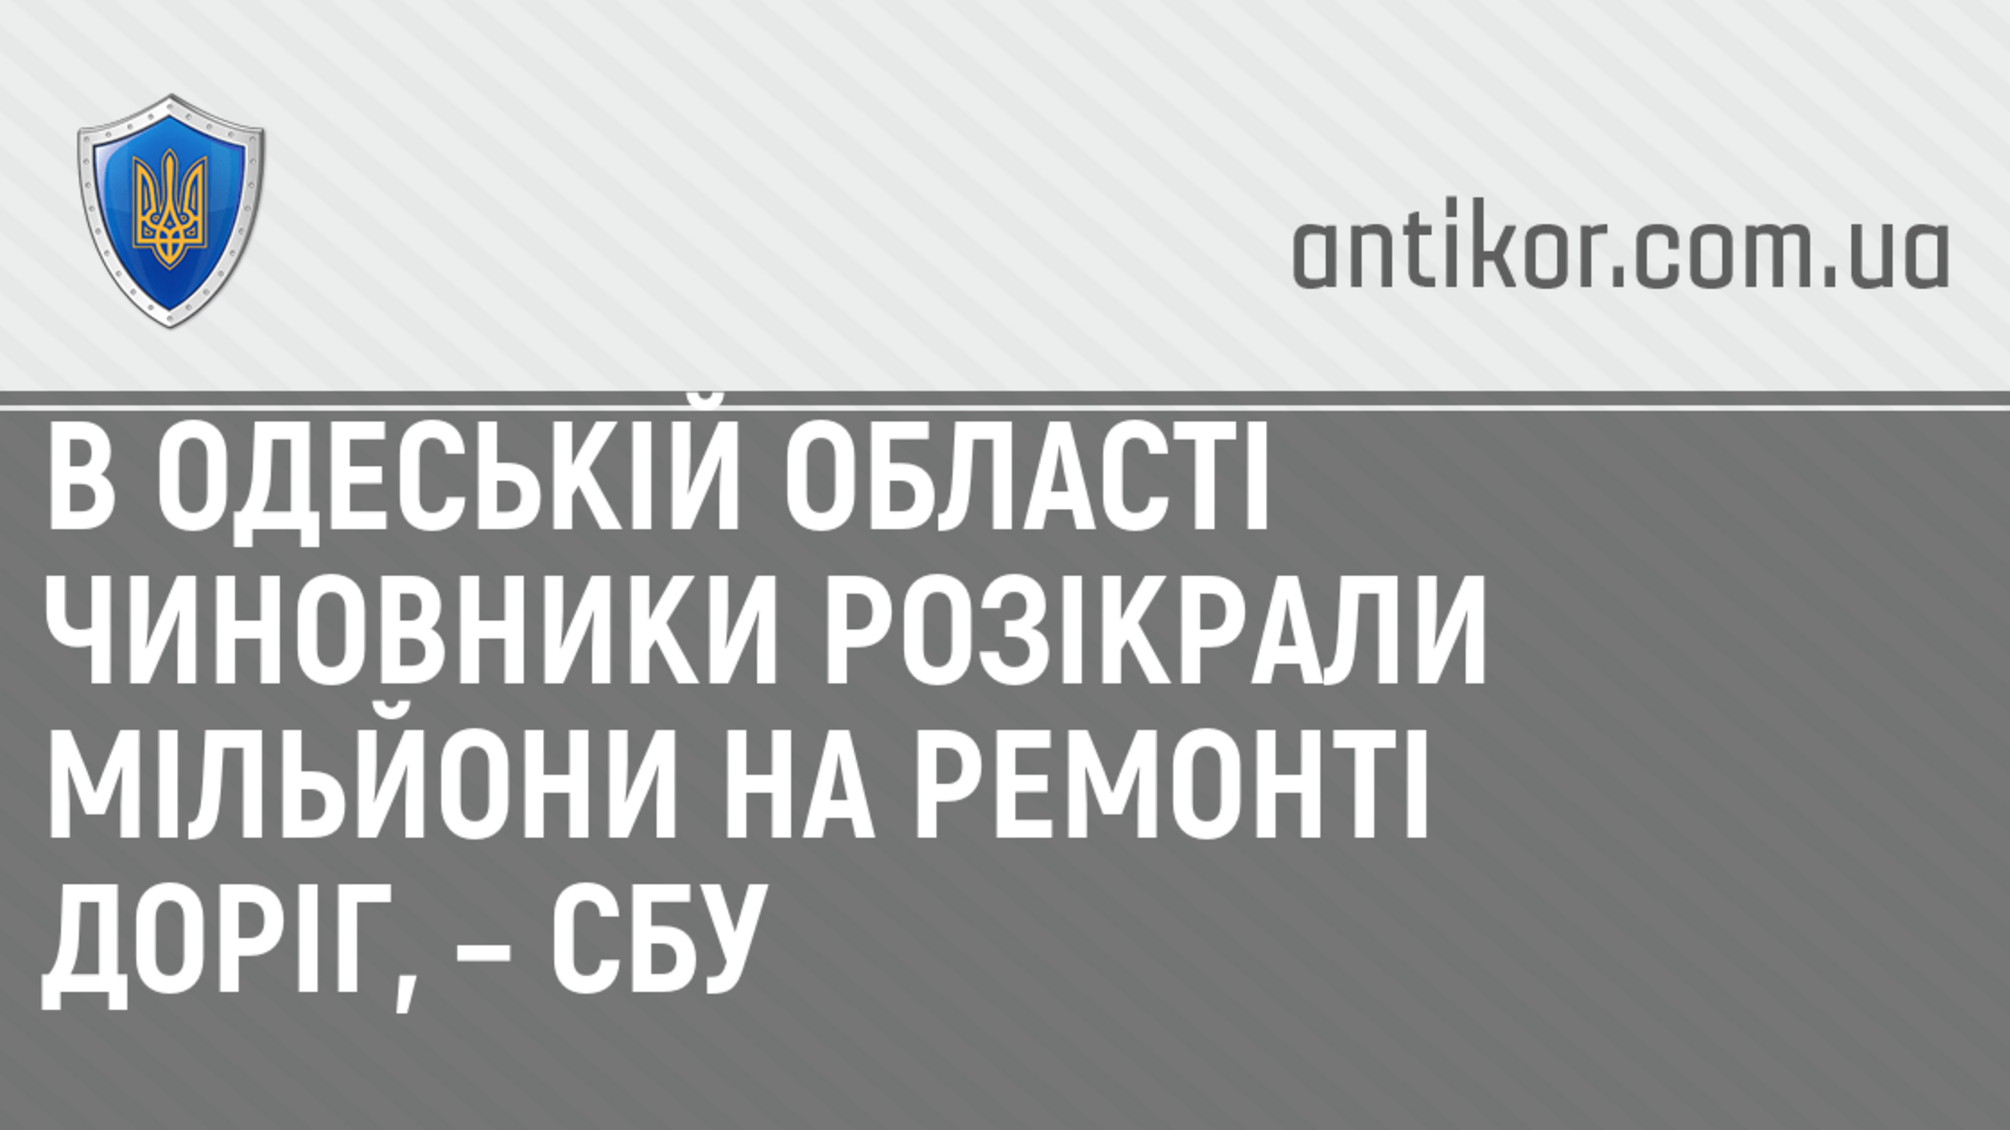 В Одеській області чиновники розікрали мільйони на ремонті доріг, – СБУ